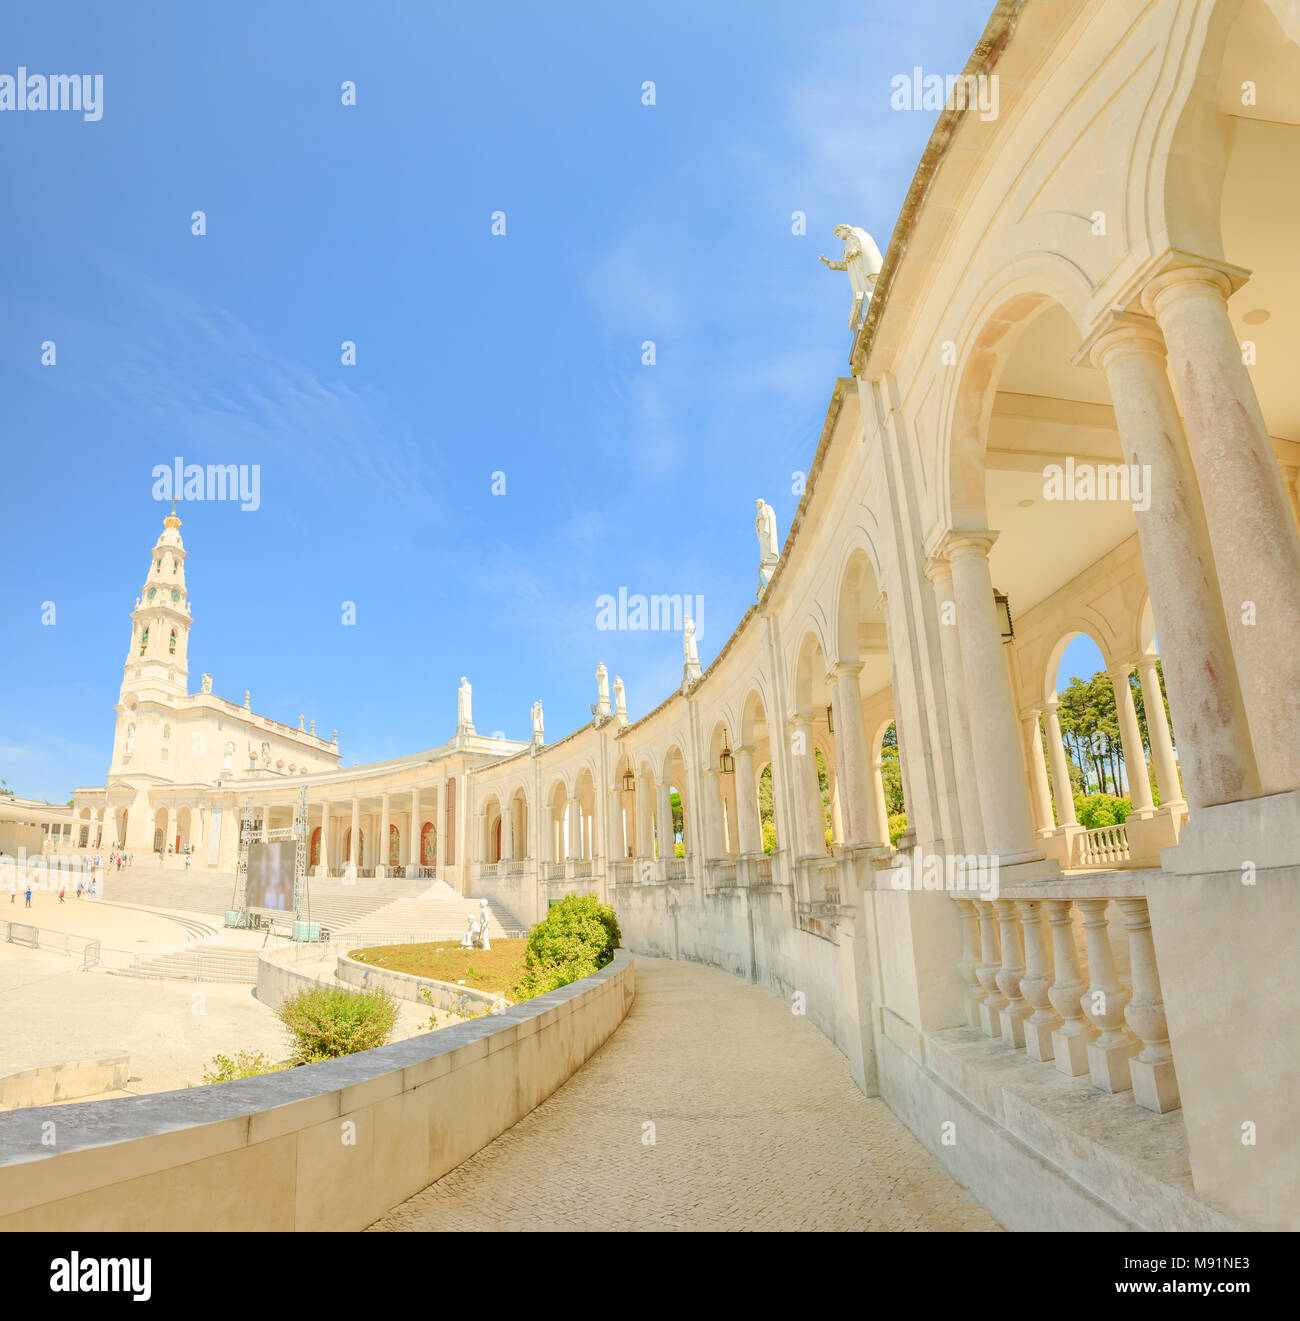 Sanctuaire de Notre Dame de Fatima dans le centre du Portugal, l'un des plus importants sanctuaires mariaux et lieux de pèlerinage pour les catholiques. Basilica de Nossa Senhora de colonnade blanche. Ciel bleu. Banque D'Images